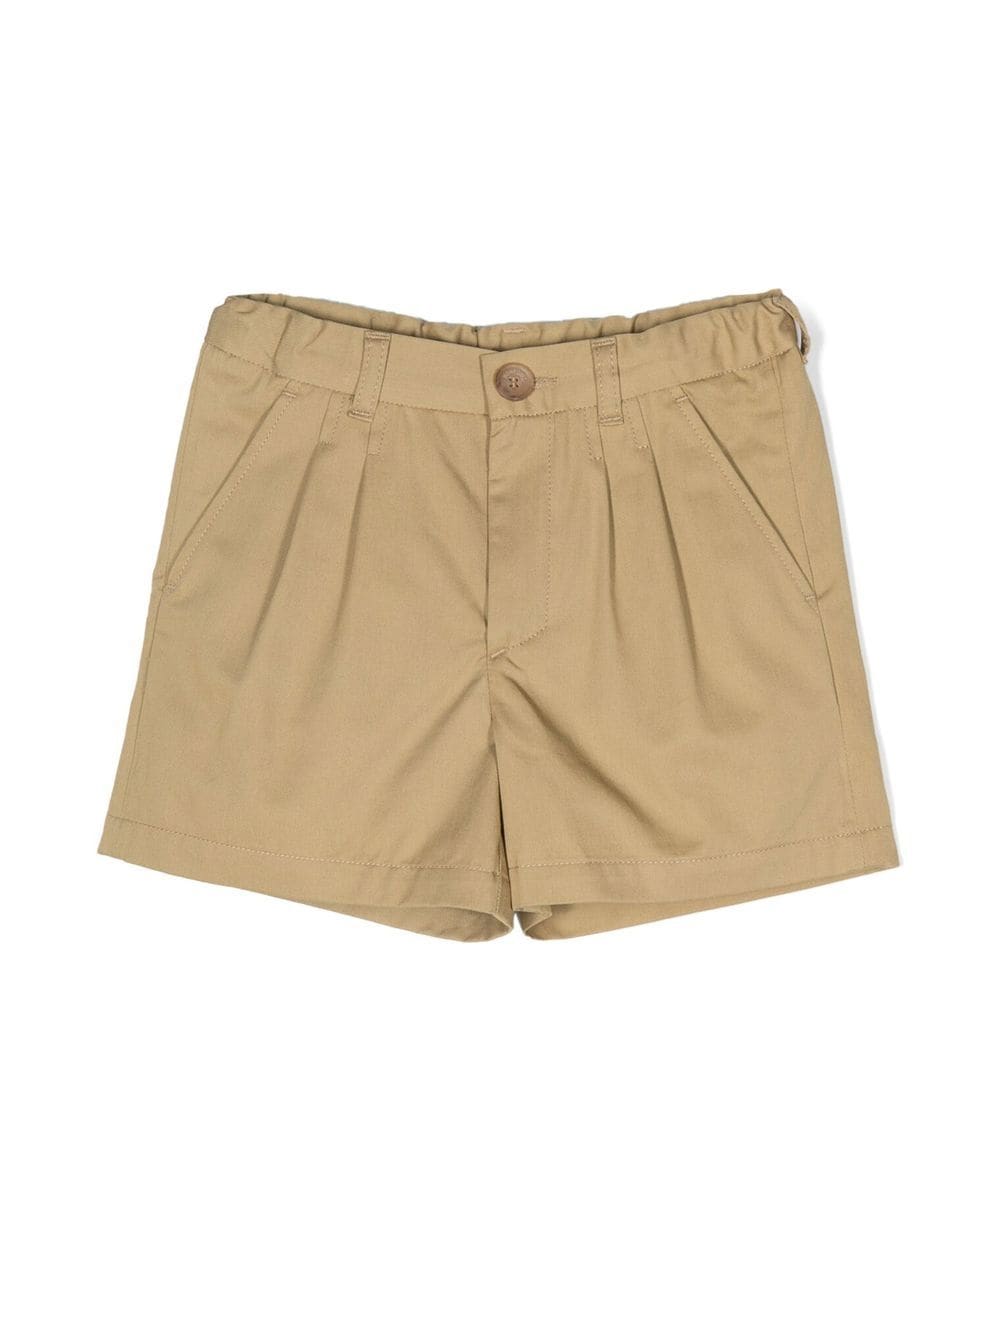 Bonpoint Charles cotton shorts - Neutrals von Bonpoint